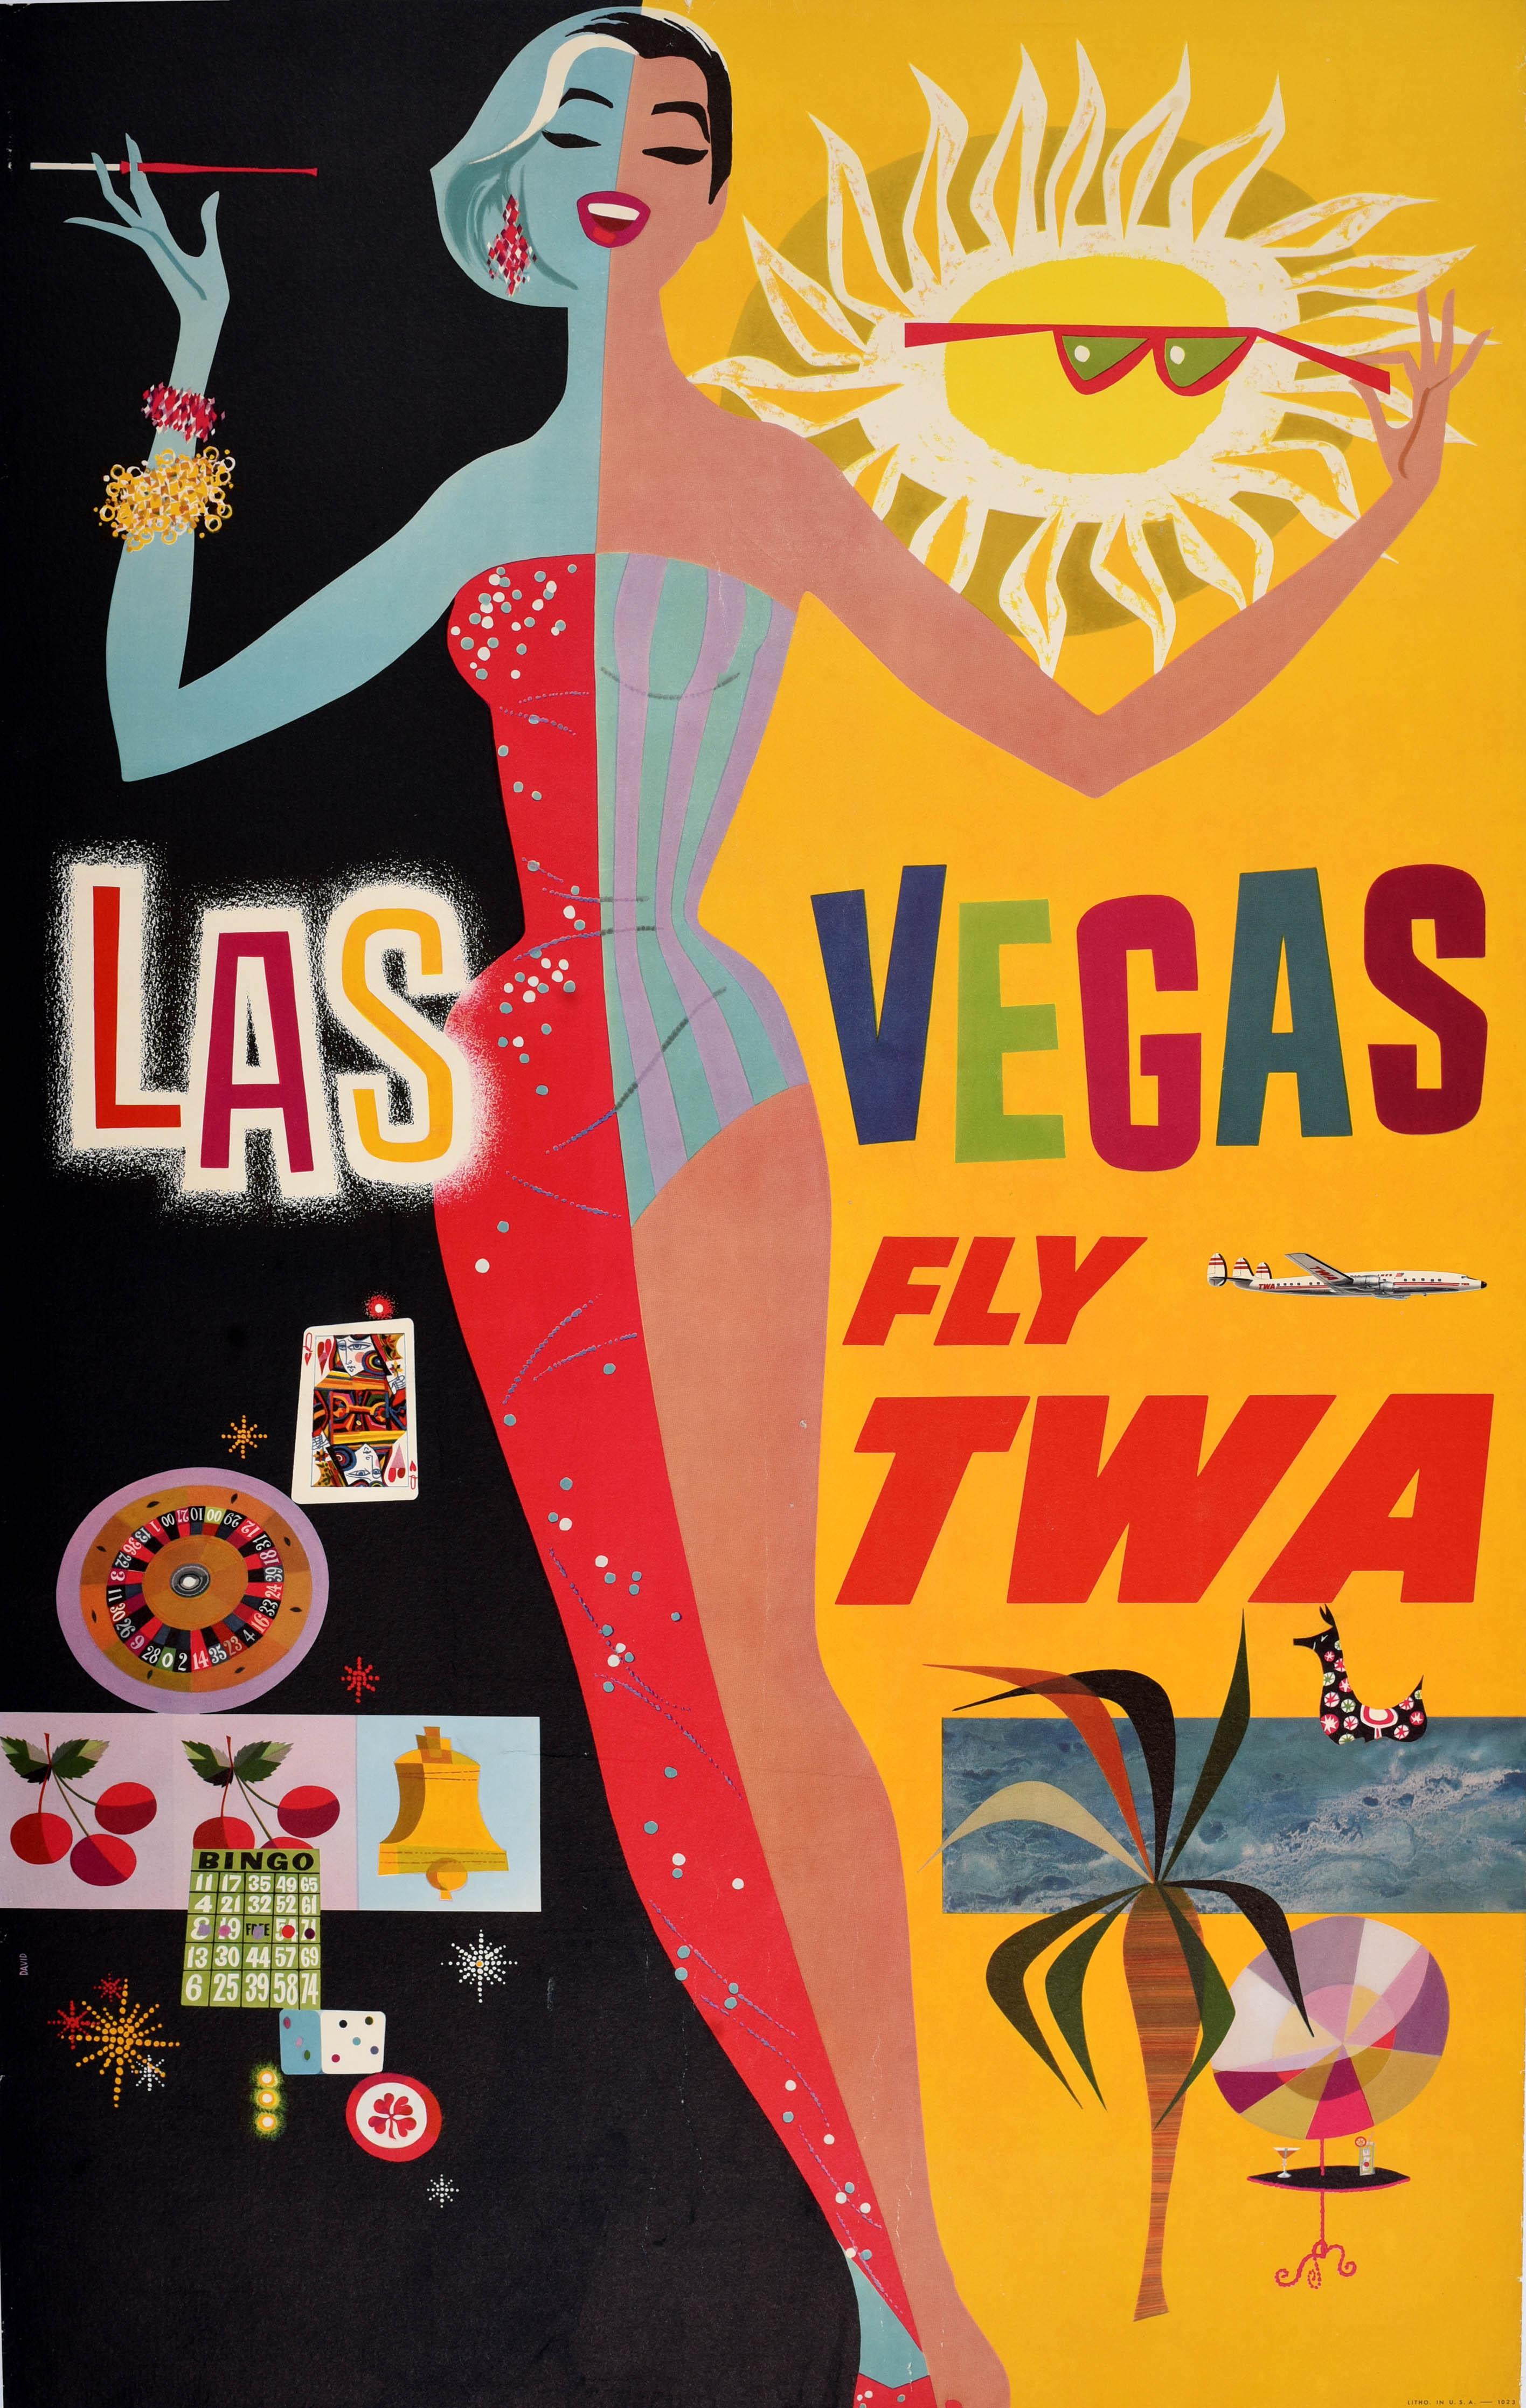 Originalflugreiseplakat aus der Mitte des Jahrhunderts für Las Vegas Fly TWA Trans World Airlines mit einem farbenfrohen Entwurf des bekannten amerikanischen Künstlers David Klein (1918-2005), der eine lächelnde elegante Dame zeigt, die Las Vegas